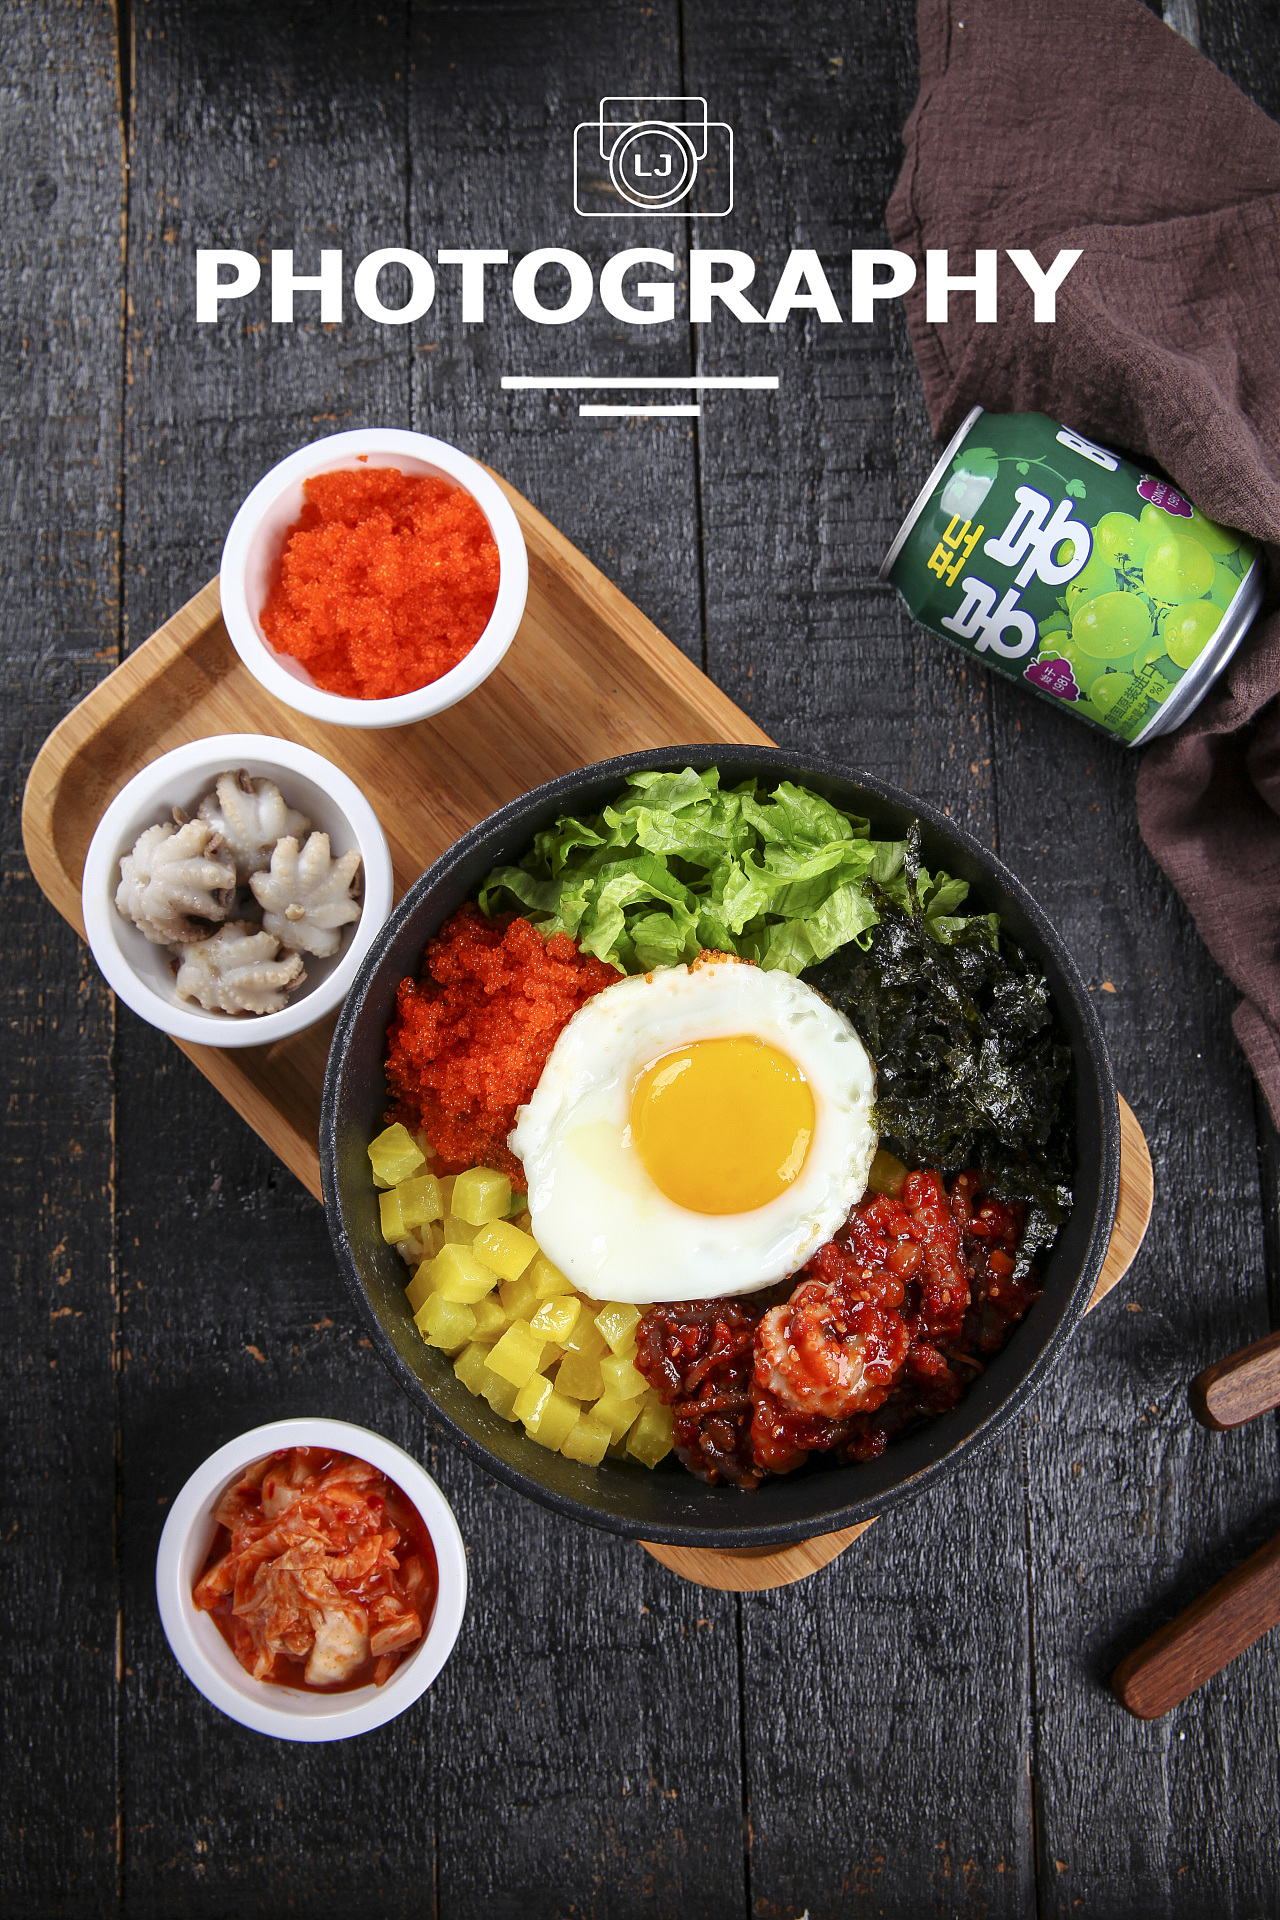 韩式快餐加盟排行榜